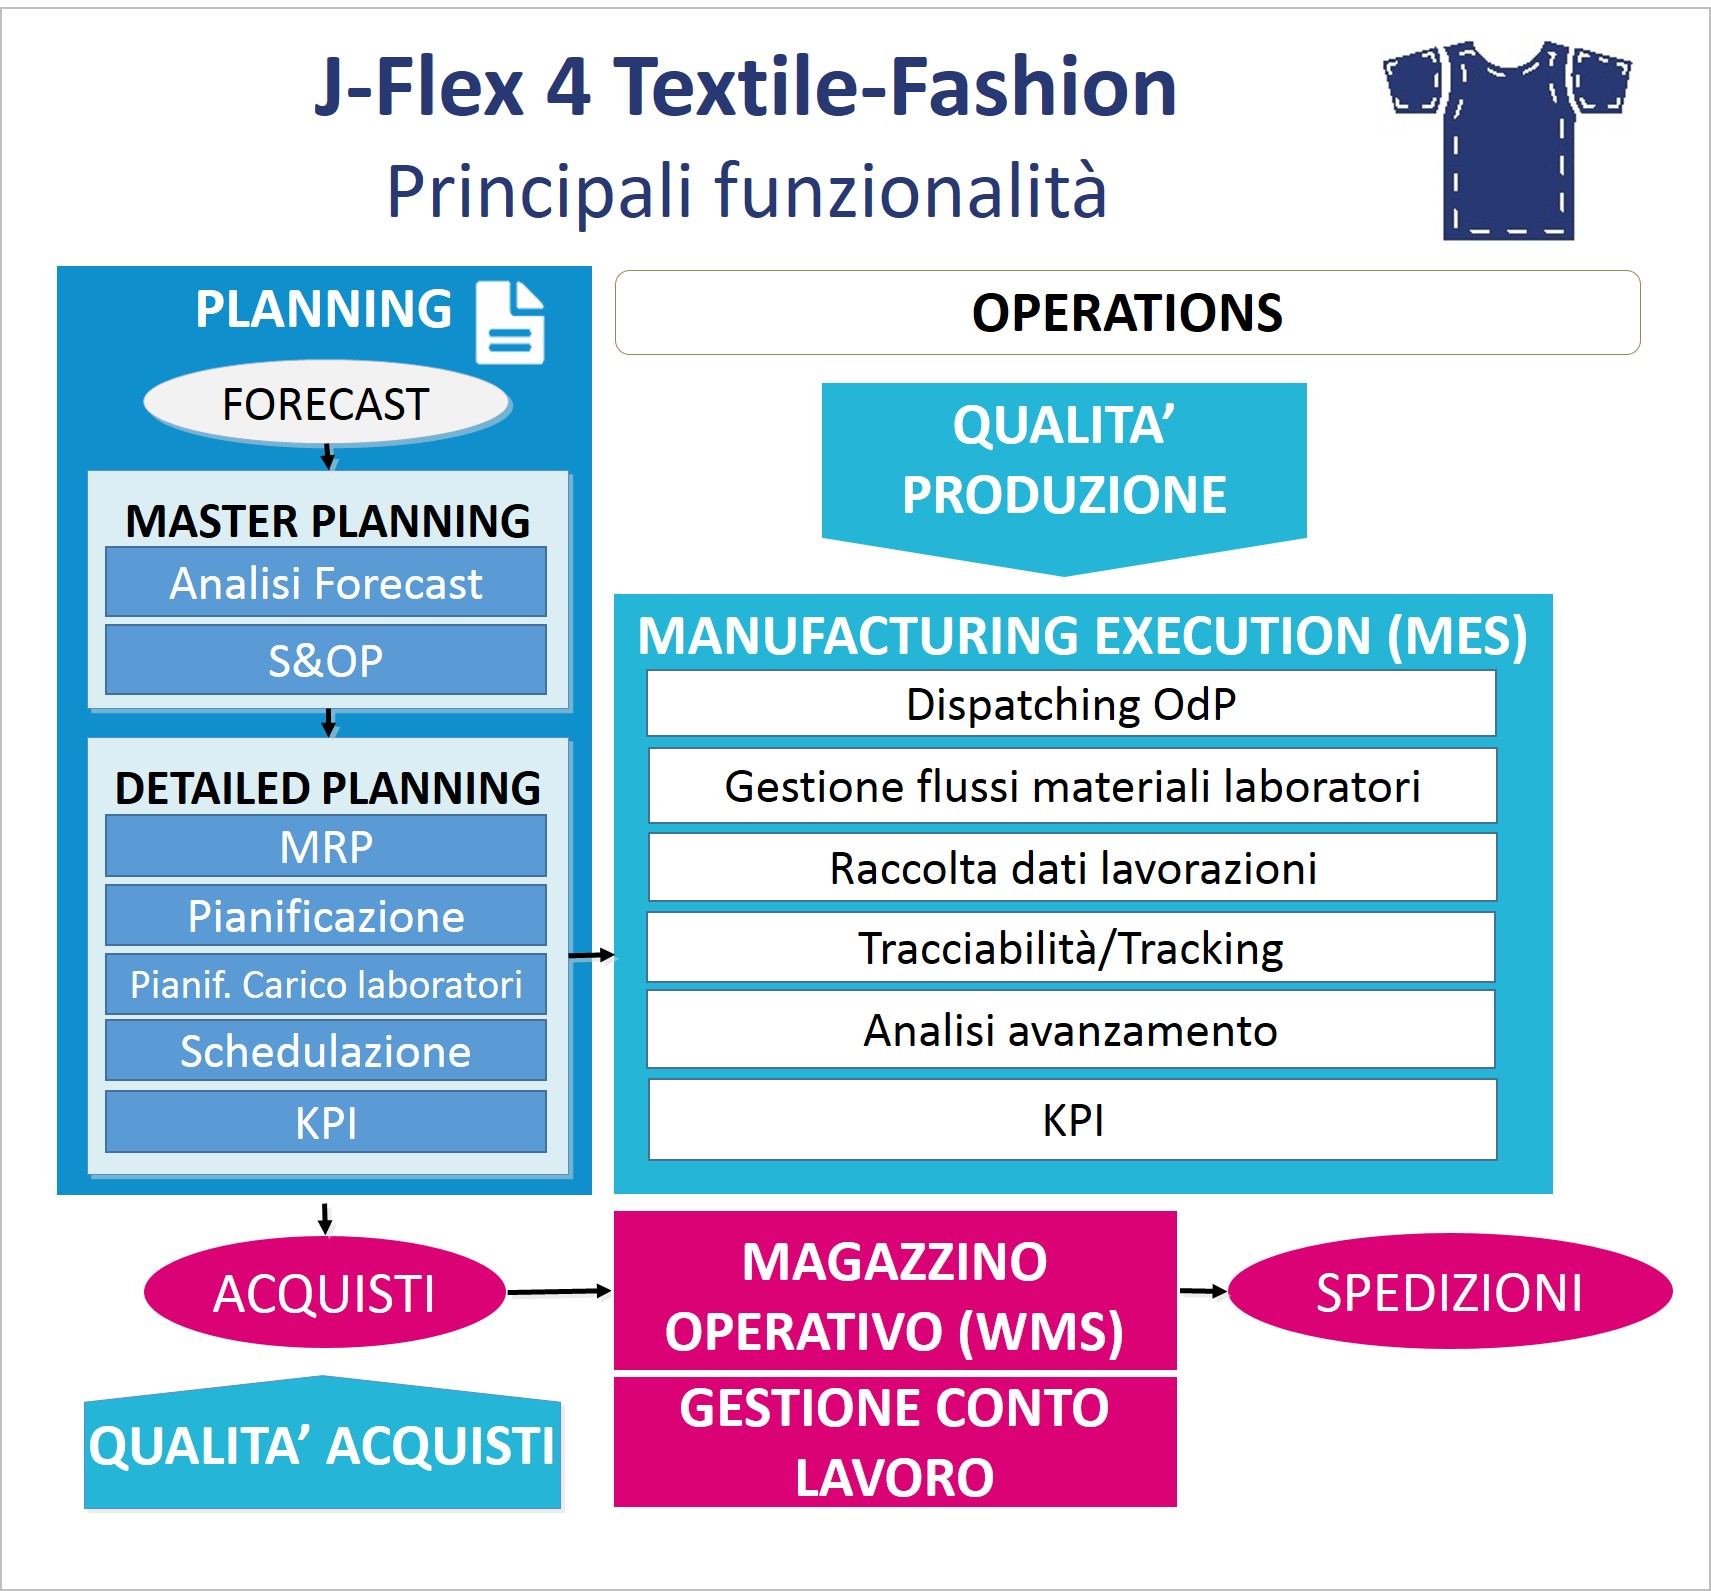 J-Flex 4 Textile Fashion